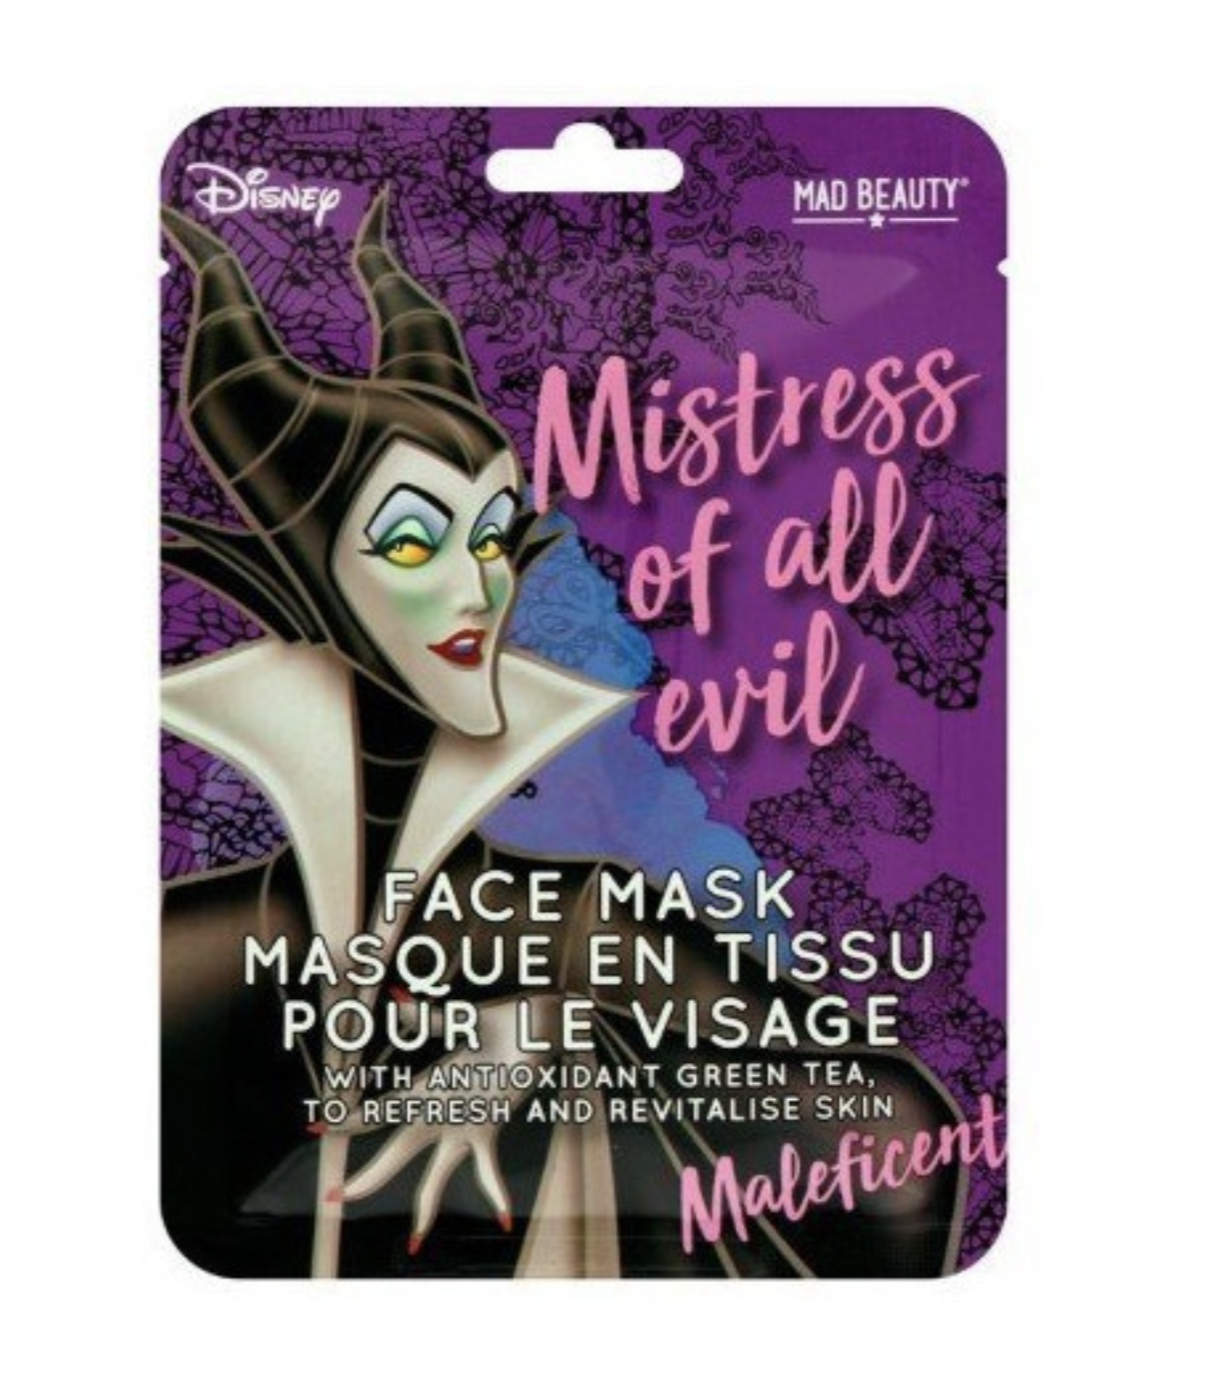 Disney - La Belle au bois dormant : Masque en tissu pour visage